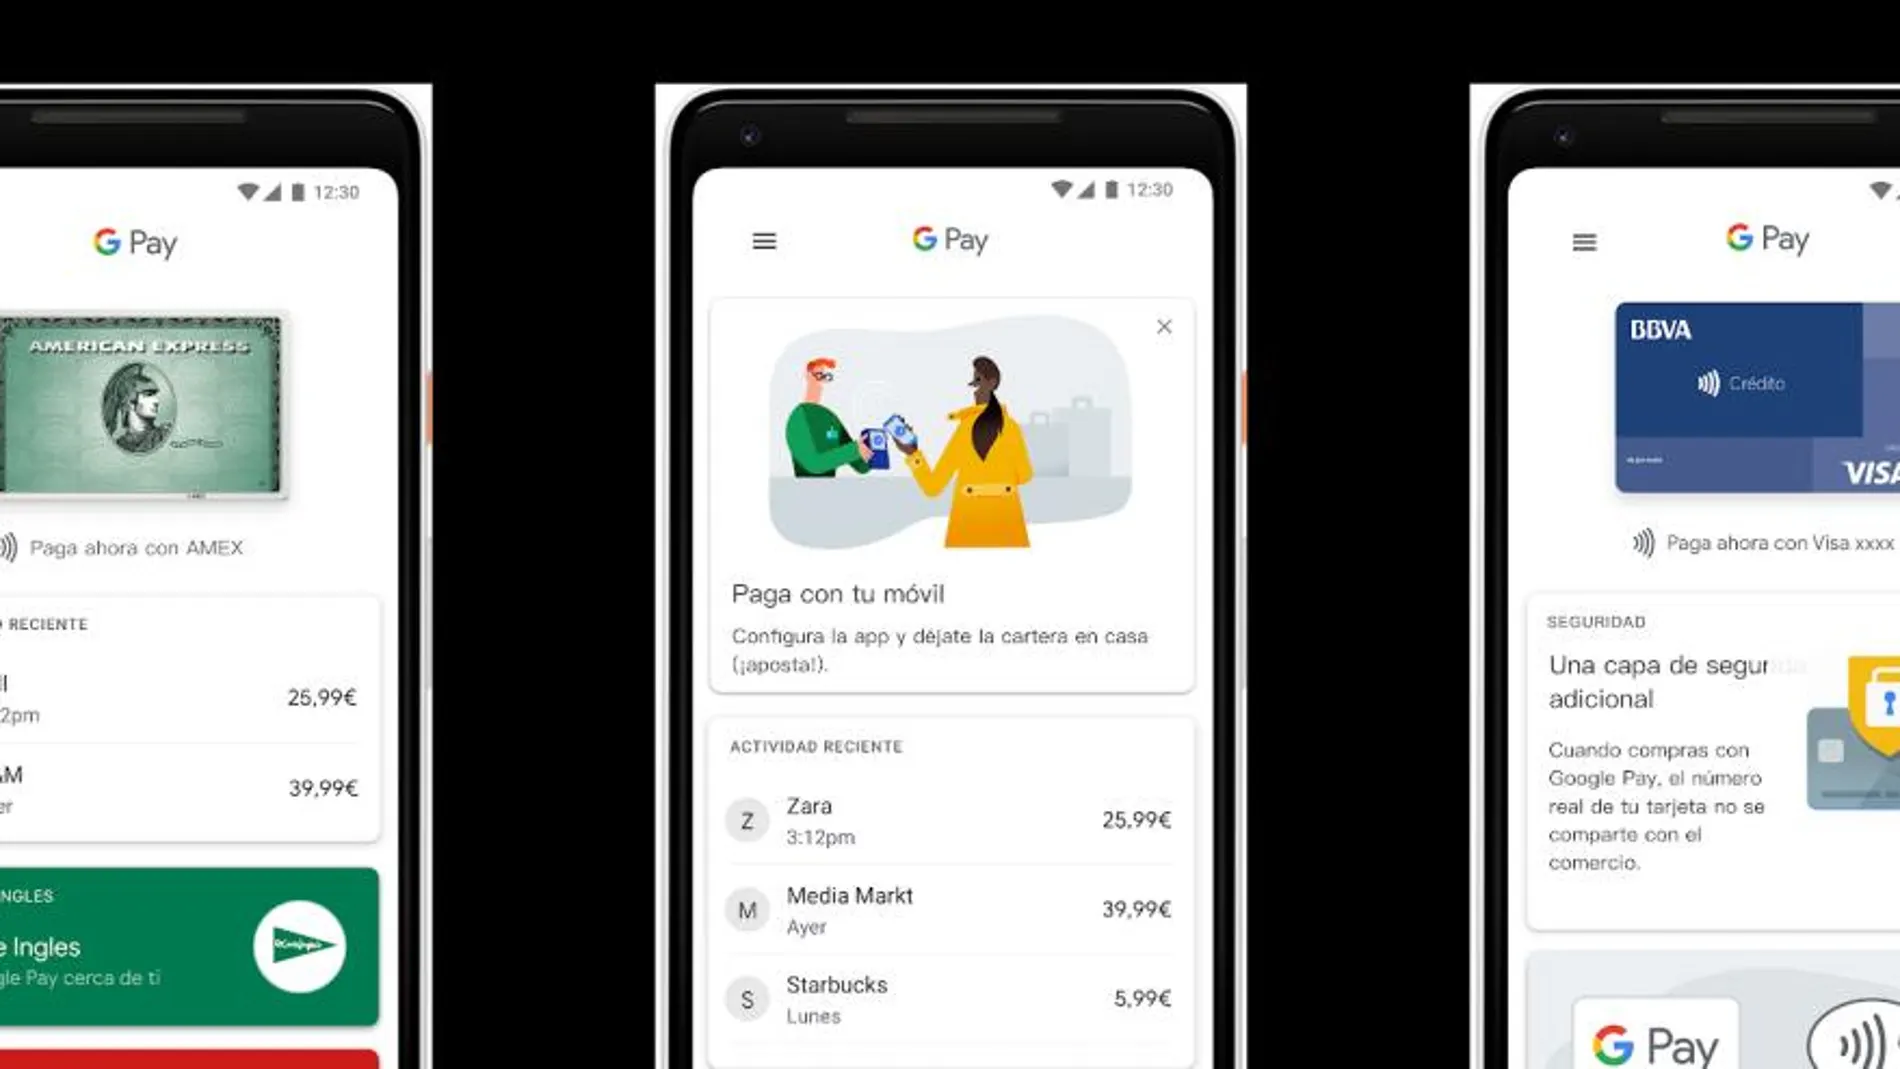 Google Pay pretende unificar todo el sistema de pagos